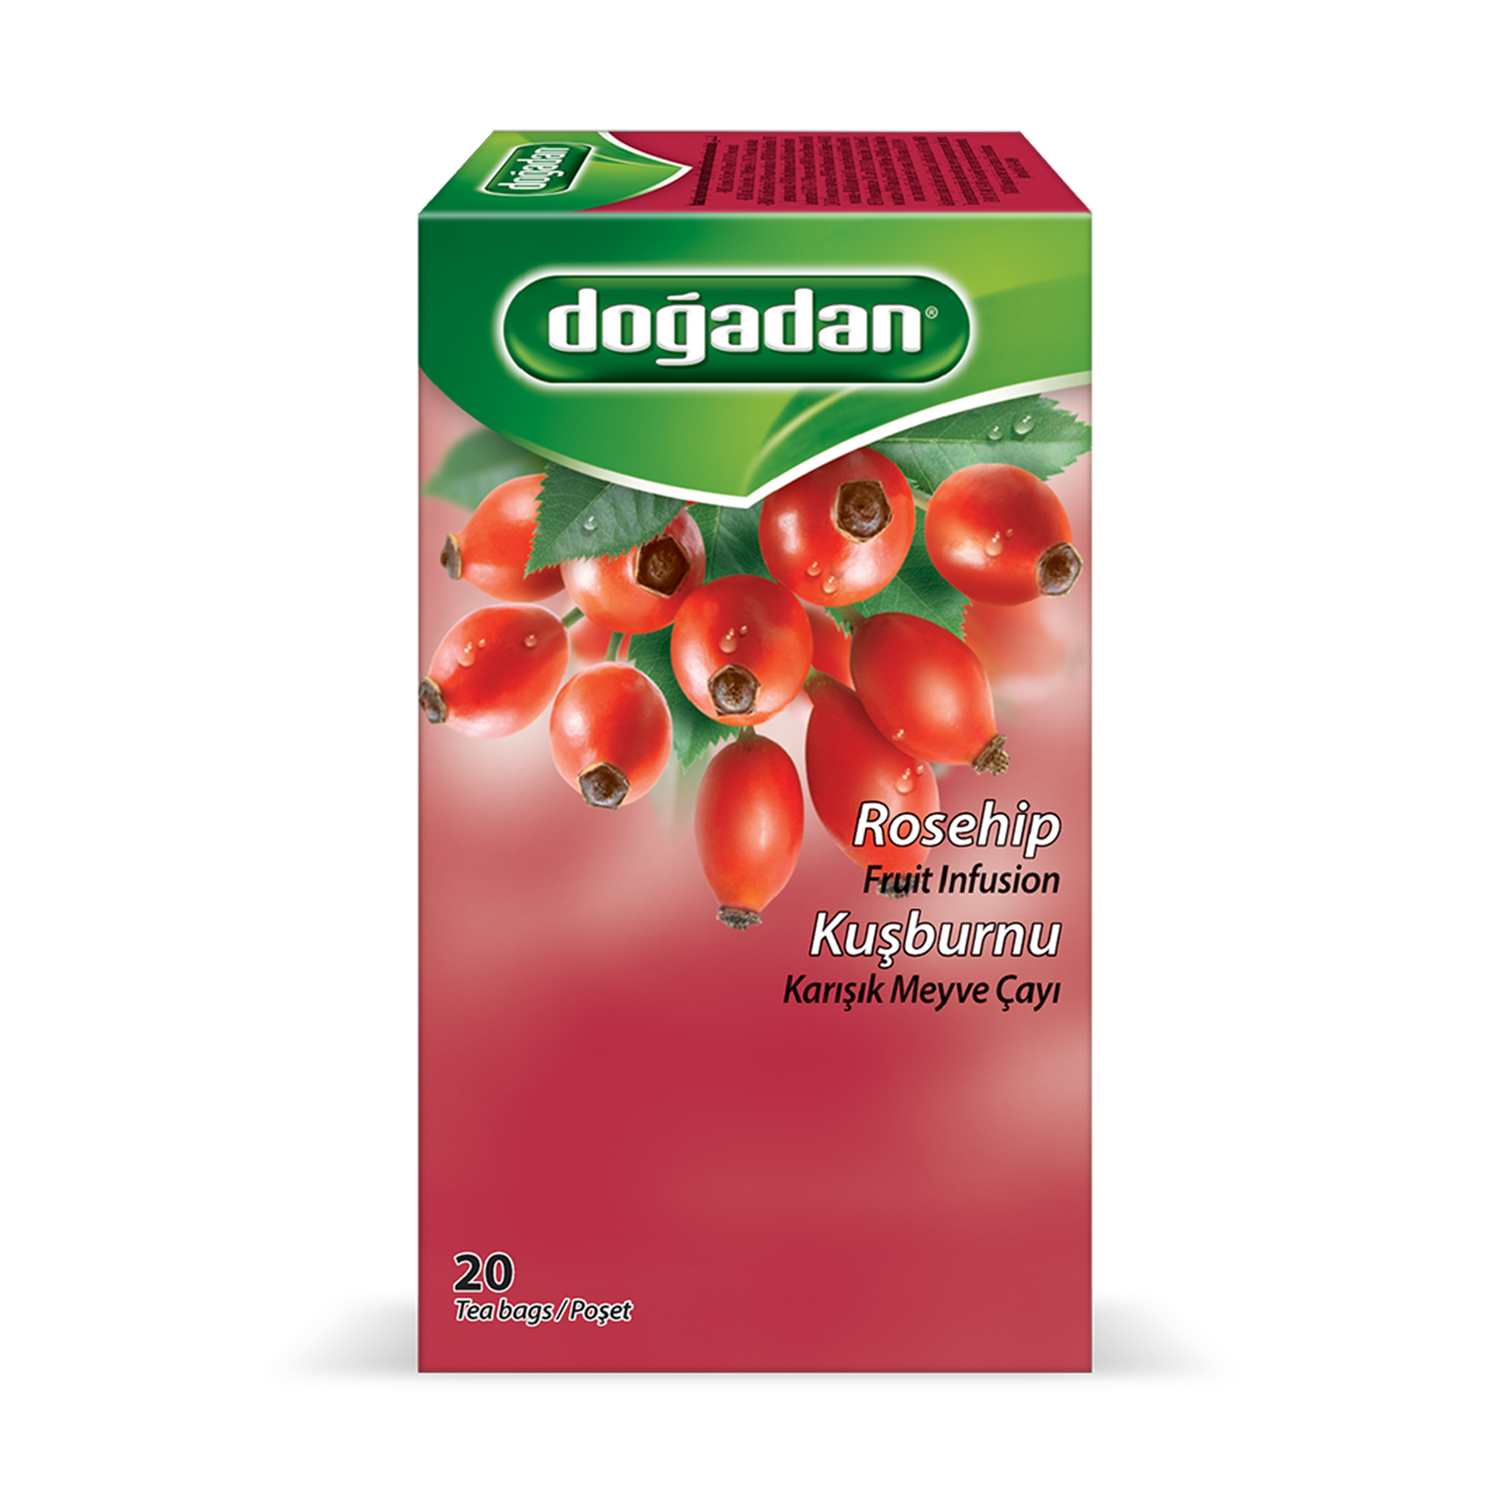 ドアダン ローズヒップティー トルコ産 | Dogadan Rosehip Fruit Tea